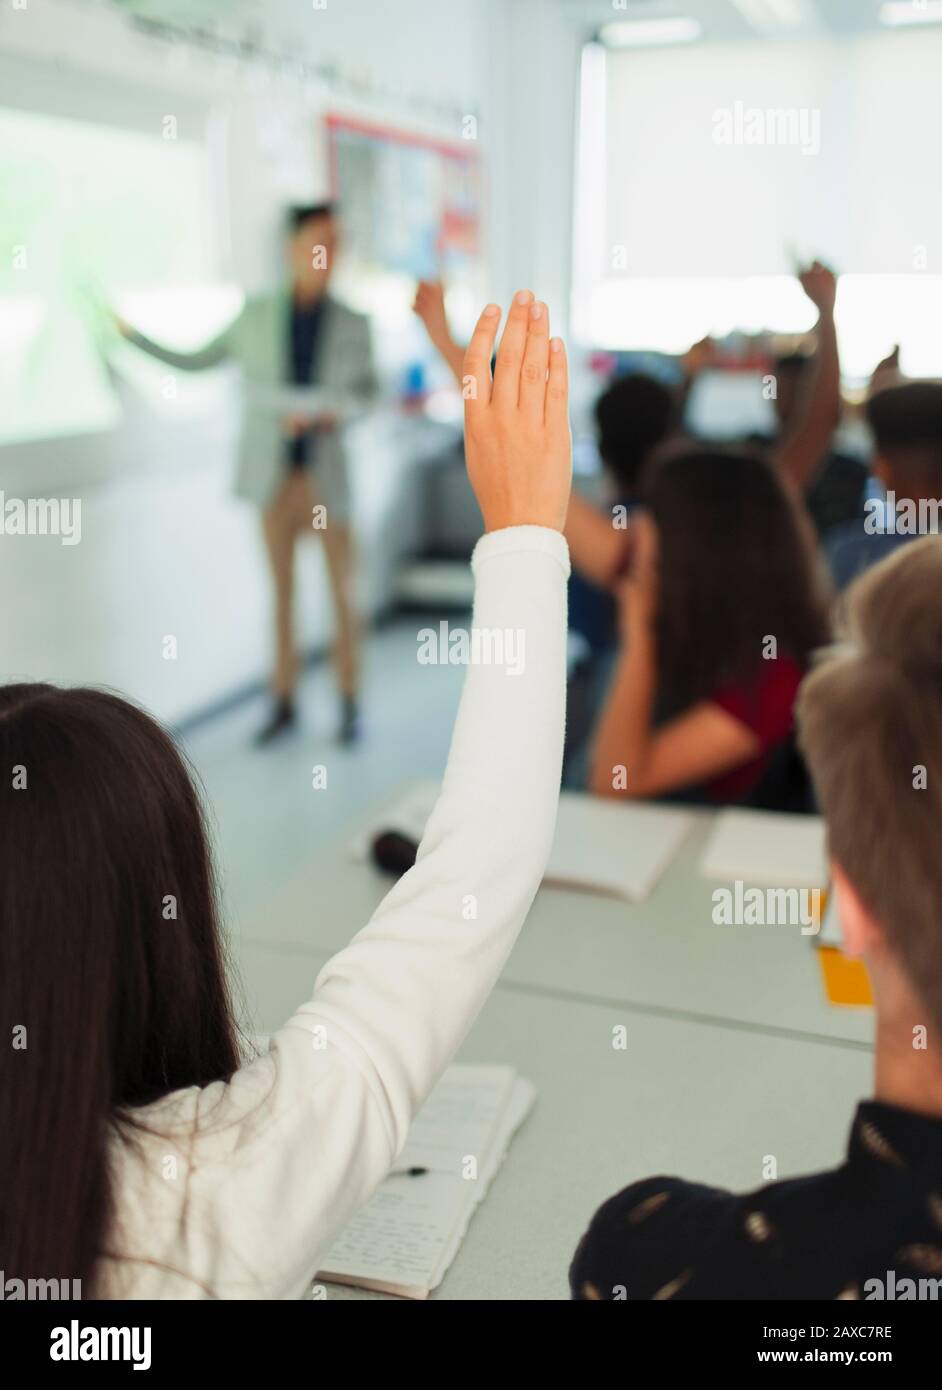 Schüler der High-School-Mädchen, die die Hand heben und während des Unterrichts im Klassenzimmer Fragen stellen Stockfoto